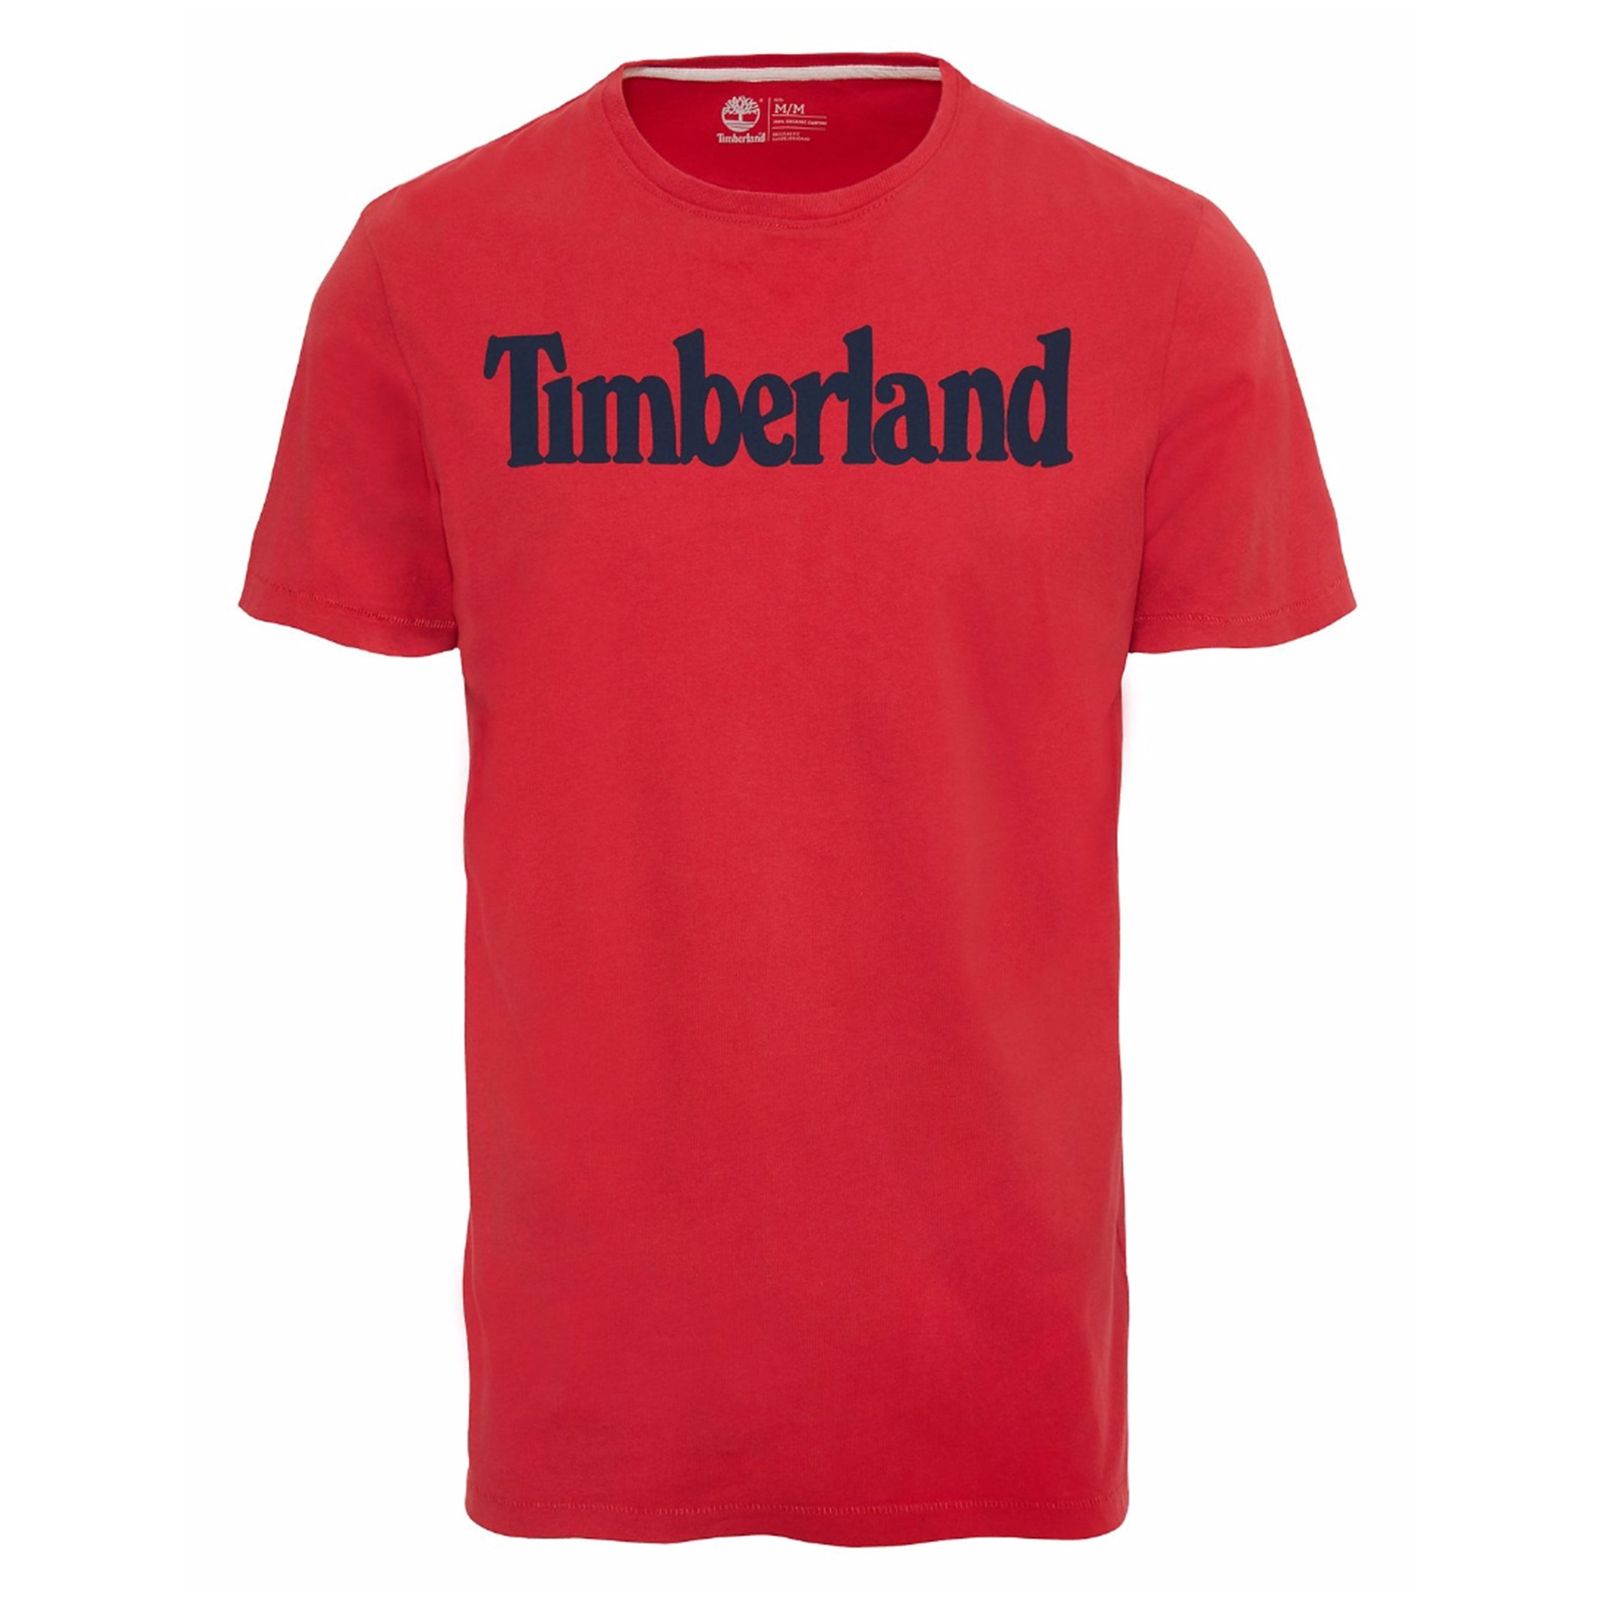 تی شرت نخی آستین کوتاه مردانه - تیمبرلند - قرمز - 2